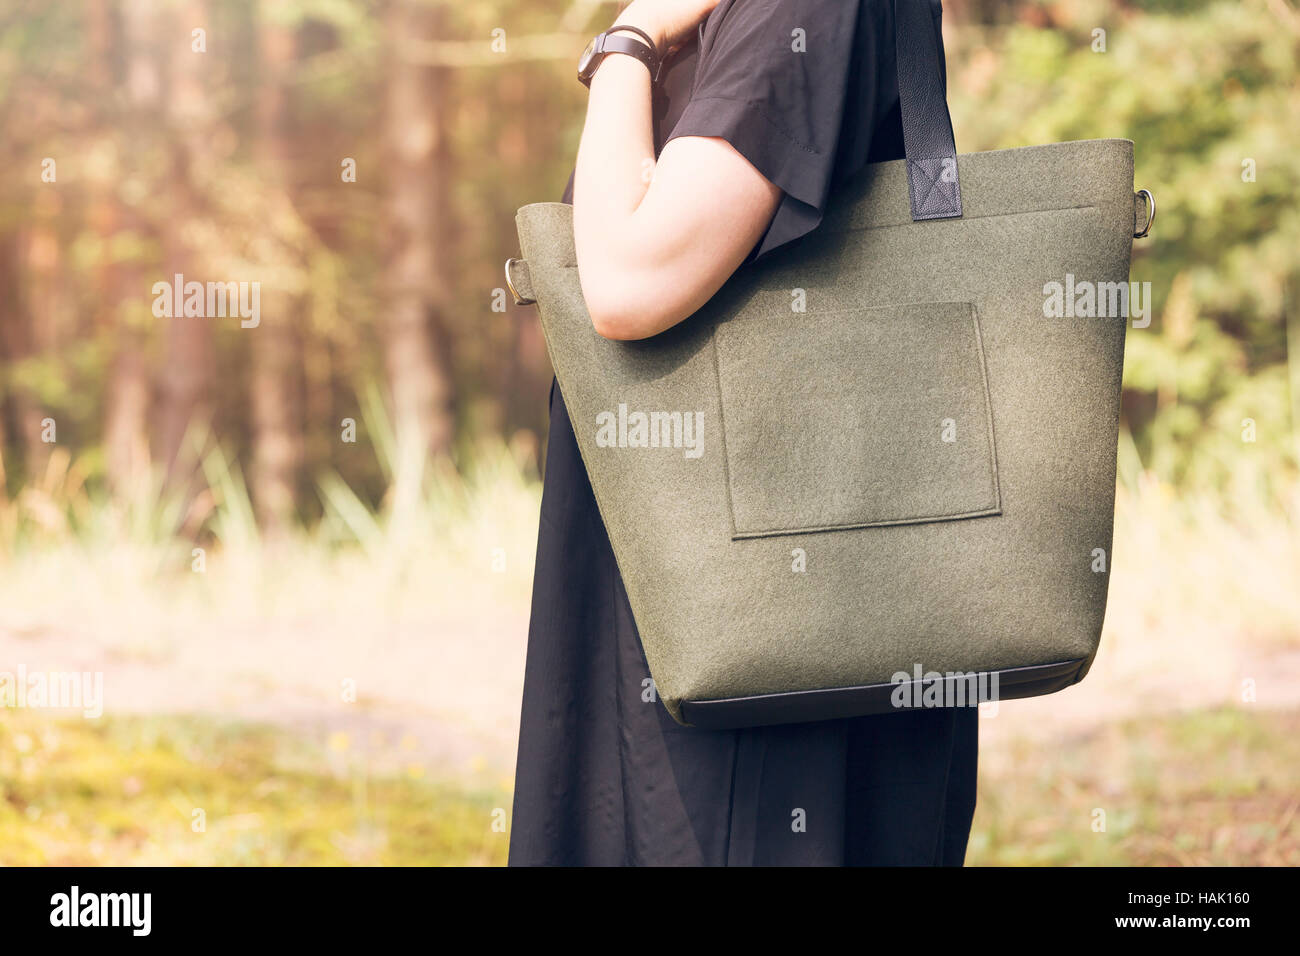 khaki color felt bag on woman's shoulder Stock Photo